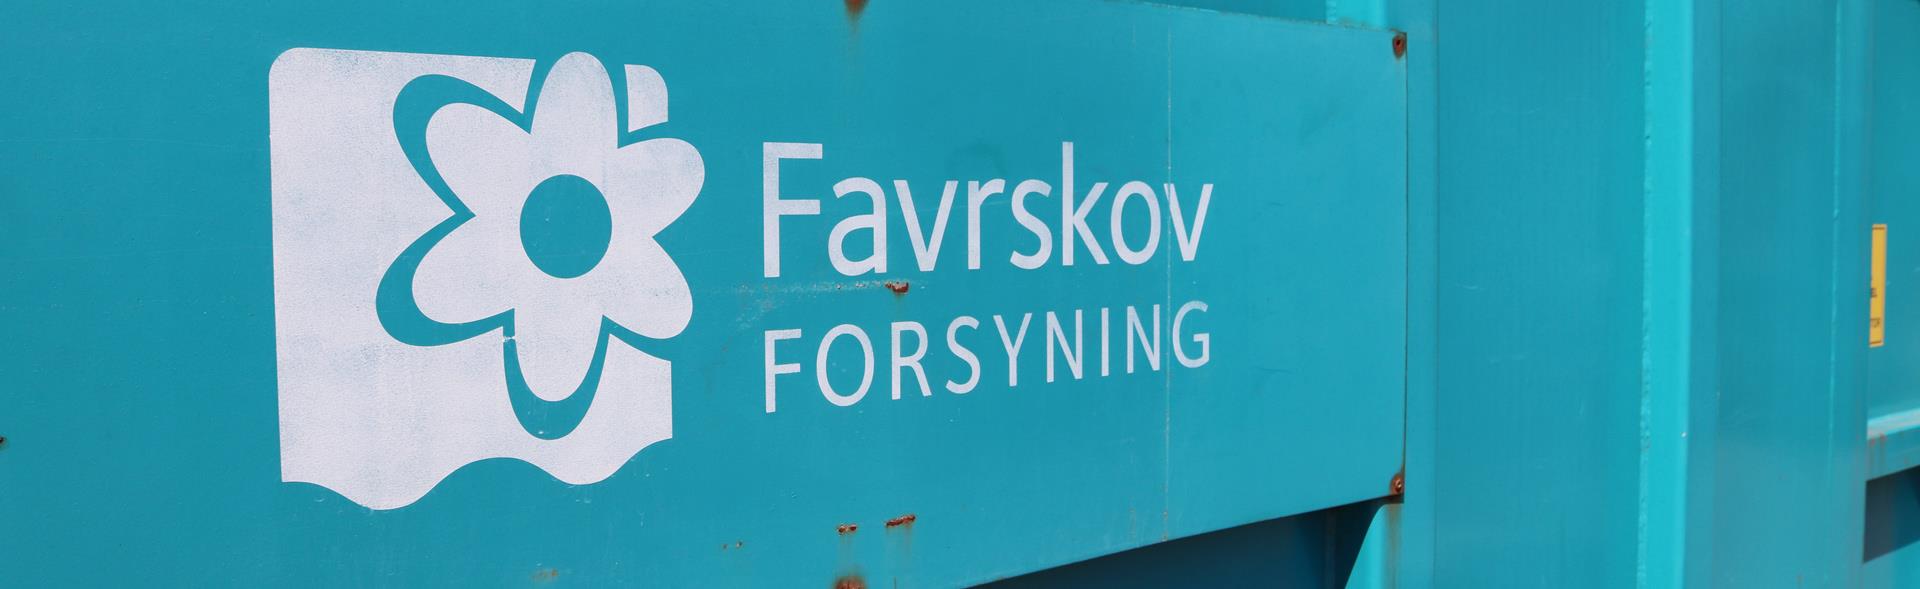 Hvidt Favrskov Forsyning logo på siden af grøn container